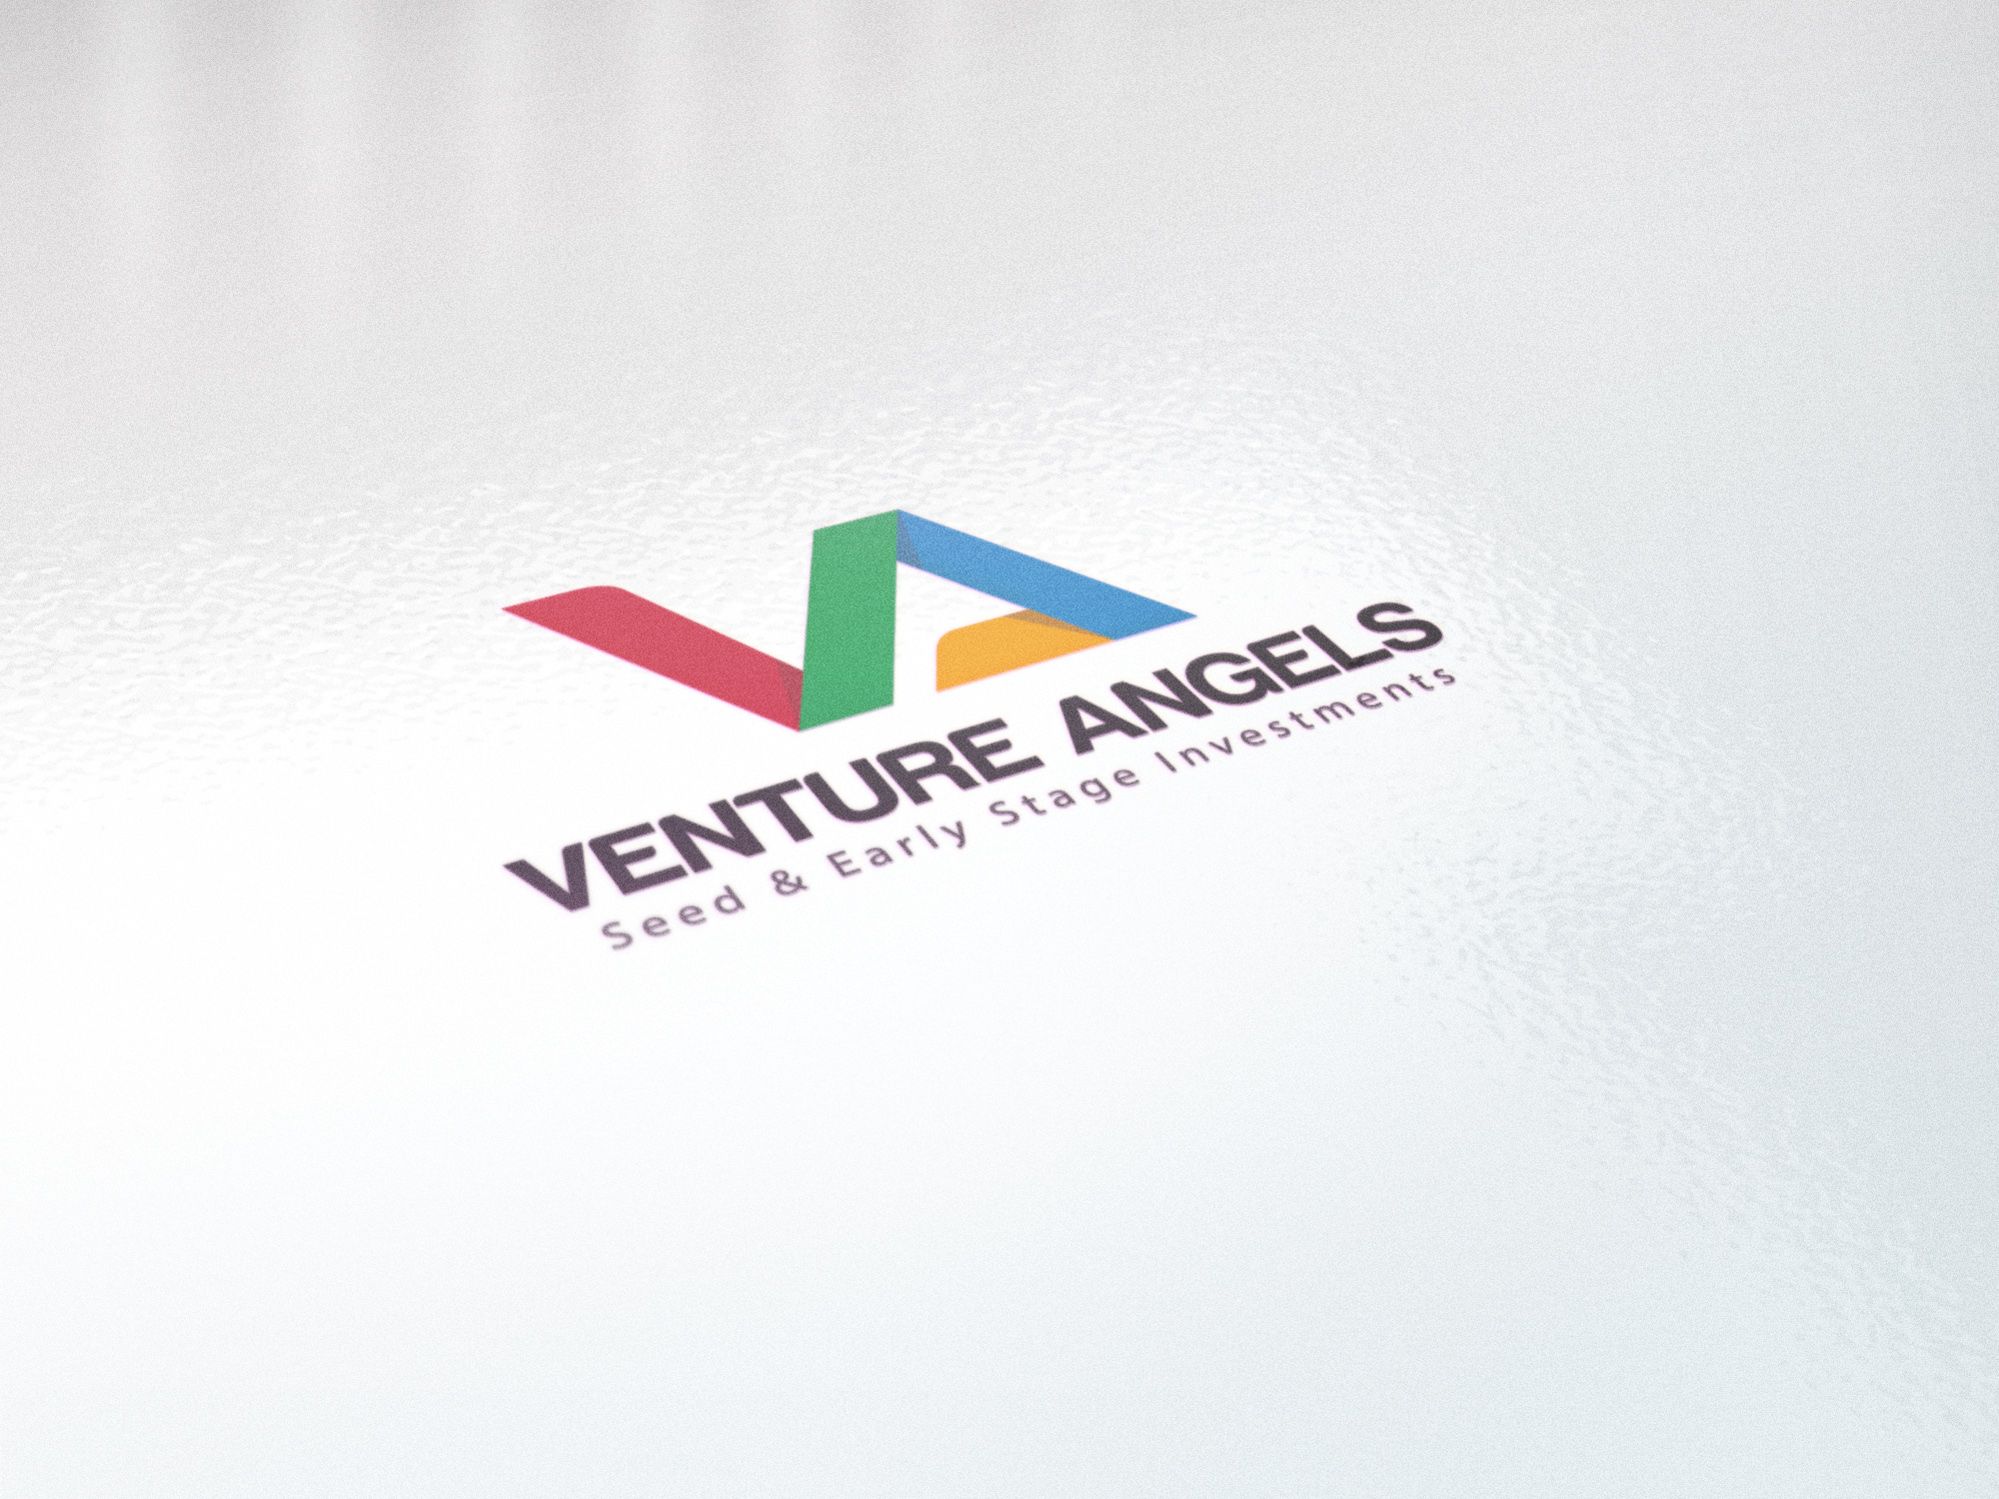 Логотип для VENTURE ANGELS - дизайнер U4po4mak